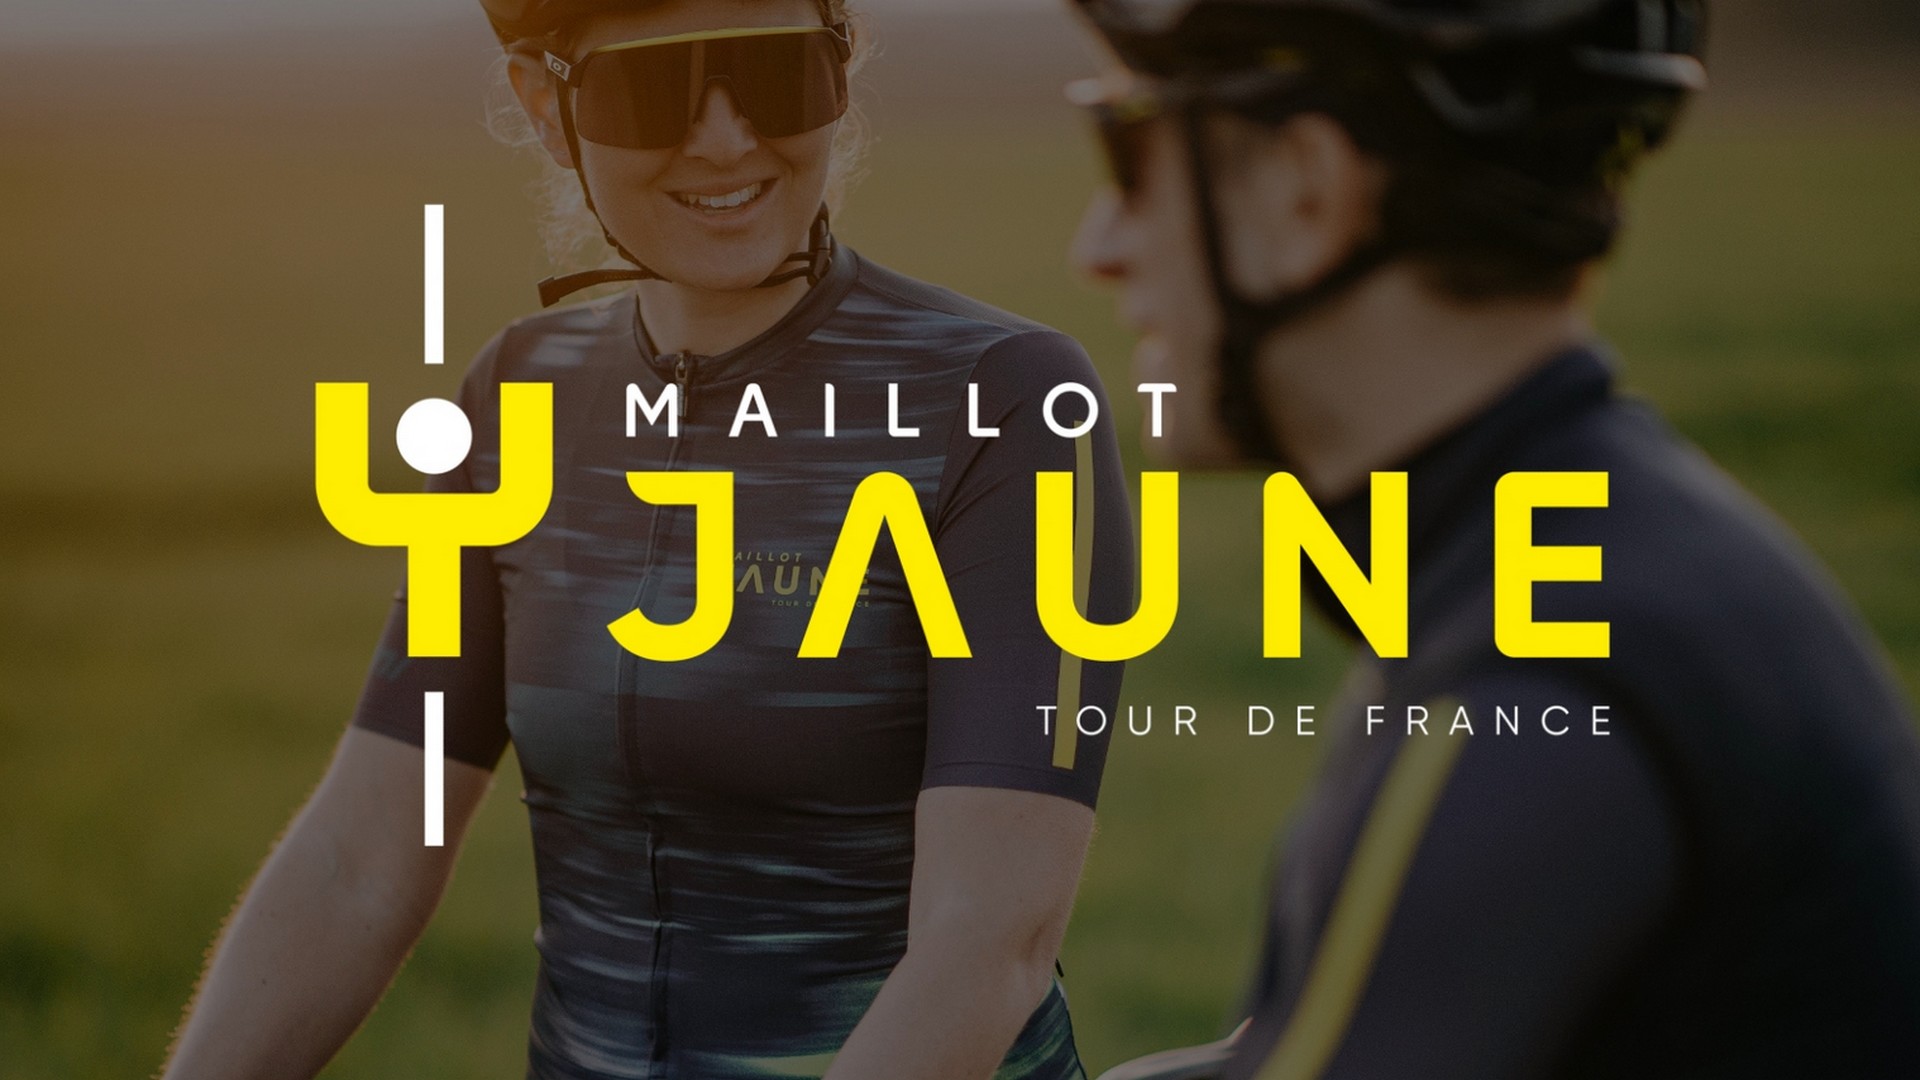 Maillot Jaune marque Tour de France